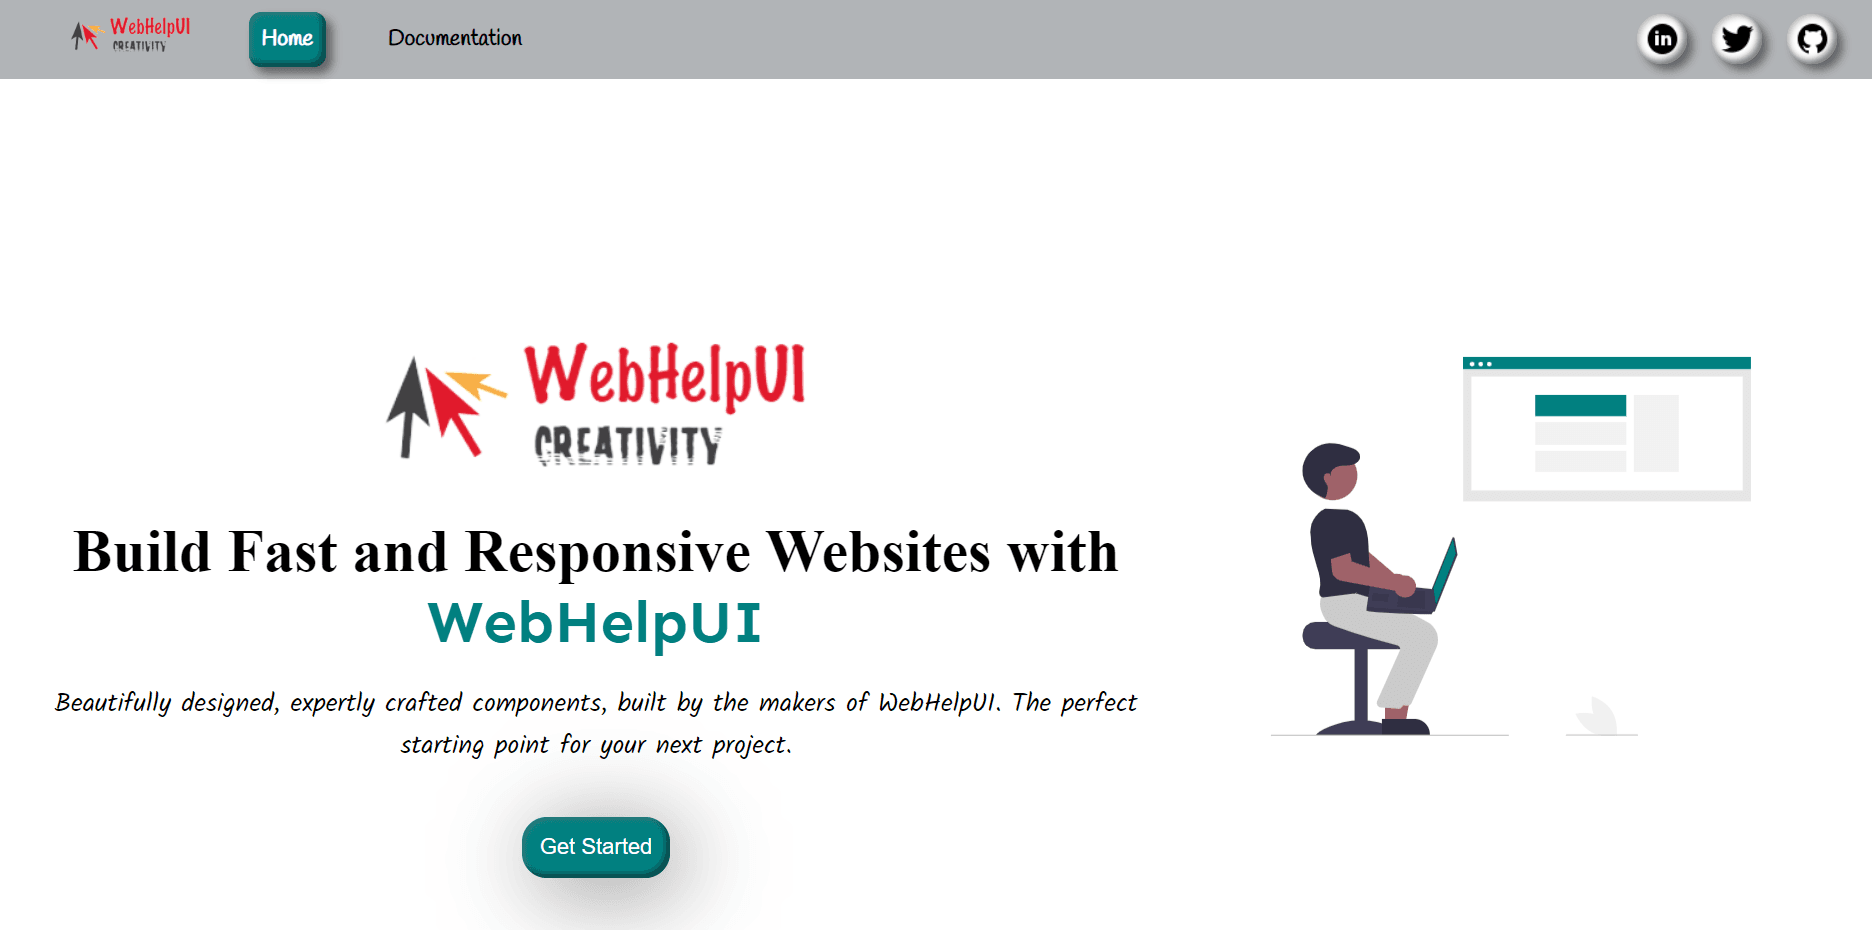 WebHelpUI